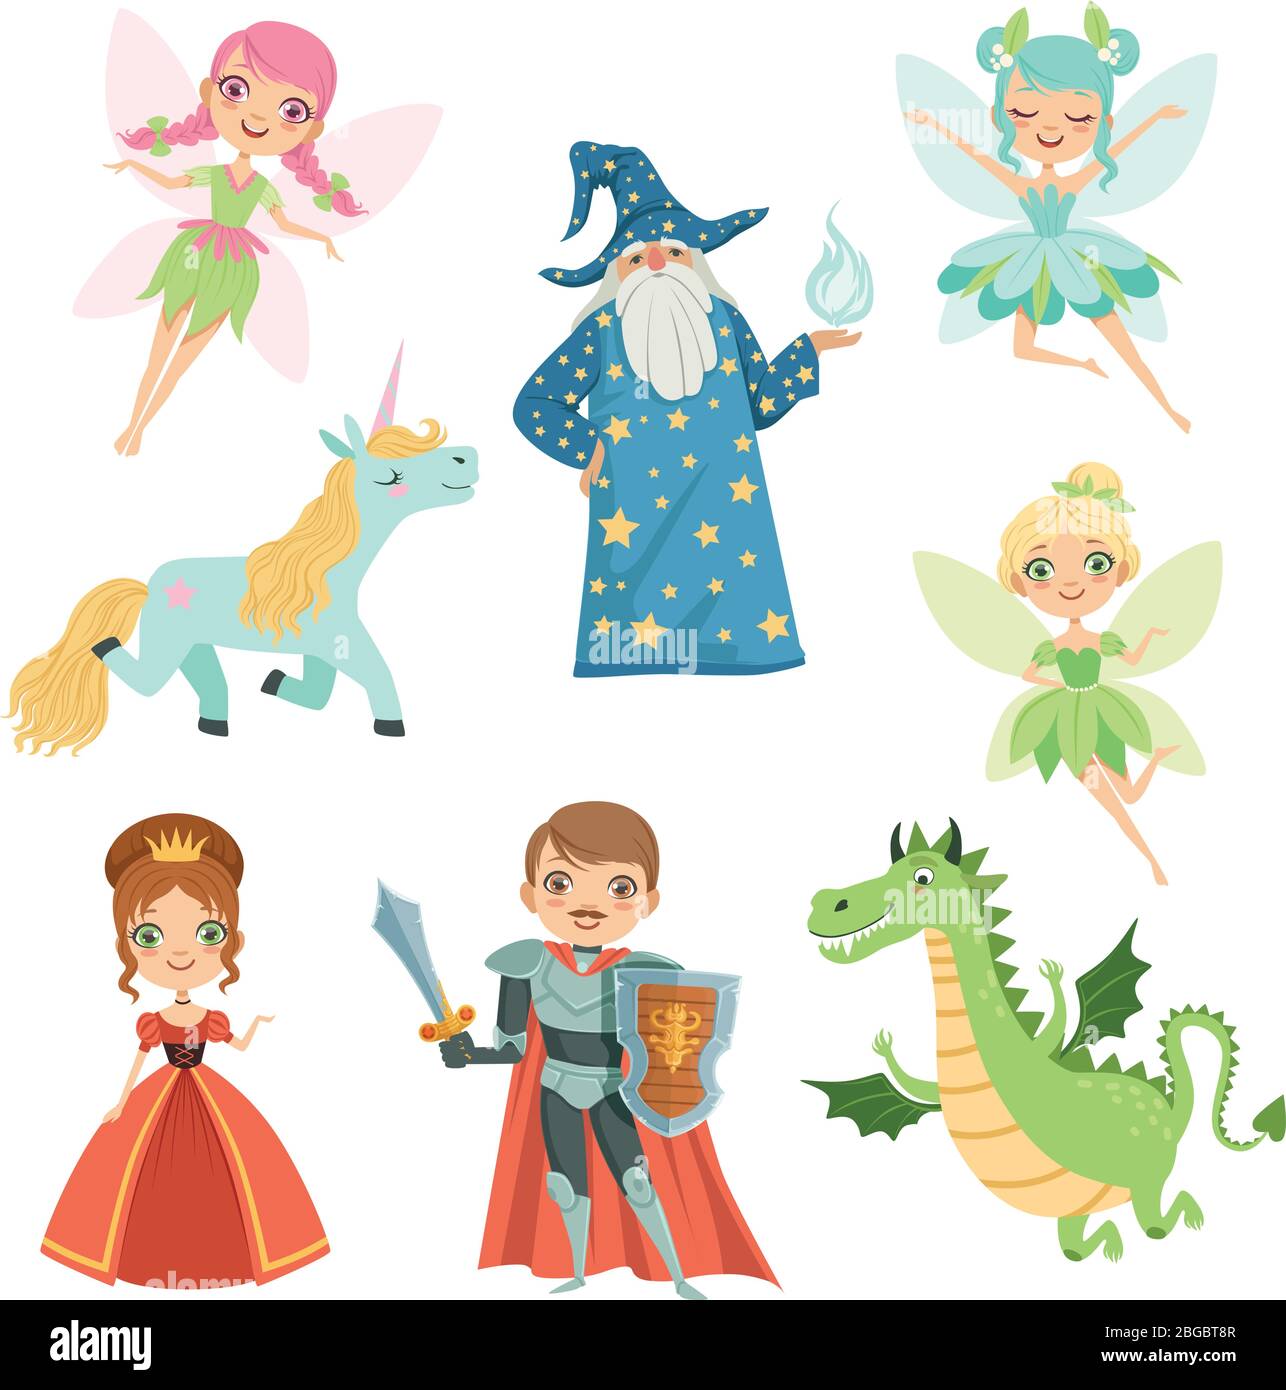 Personaggi da favola in costumi diversi. Principessa, divertente unicorno. Mago, drago e cavaliere. Illustrazioni vettoriali in stile cartoon Illustrazione Vettoriale